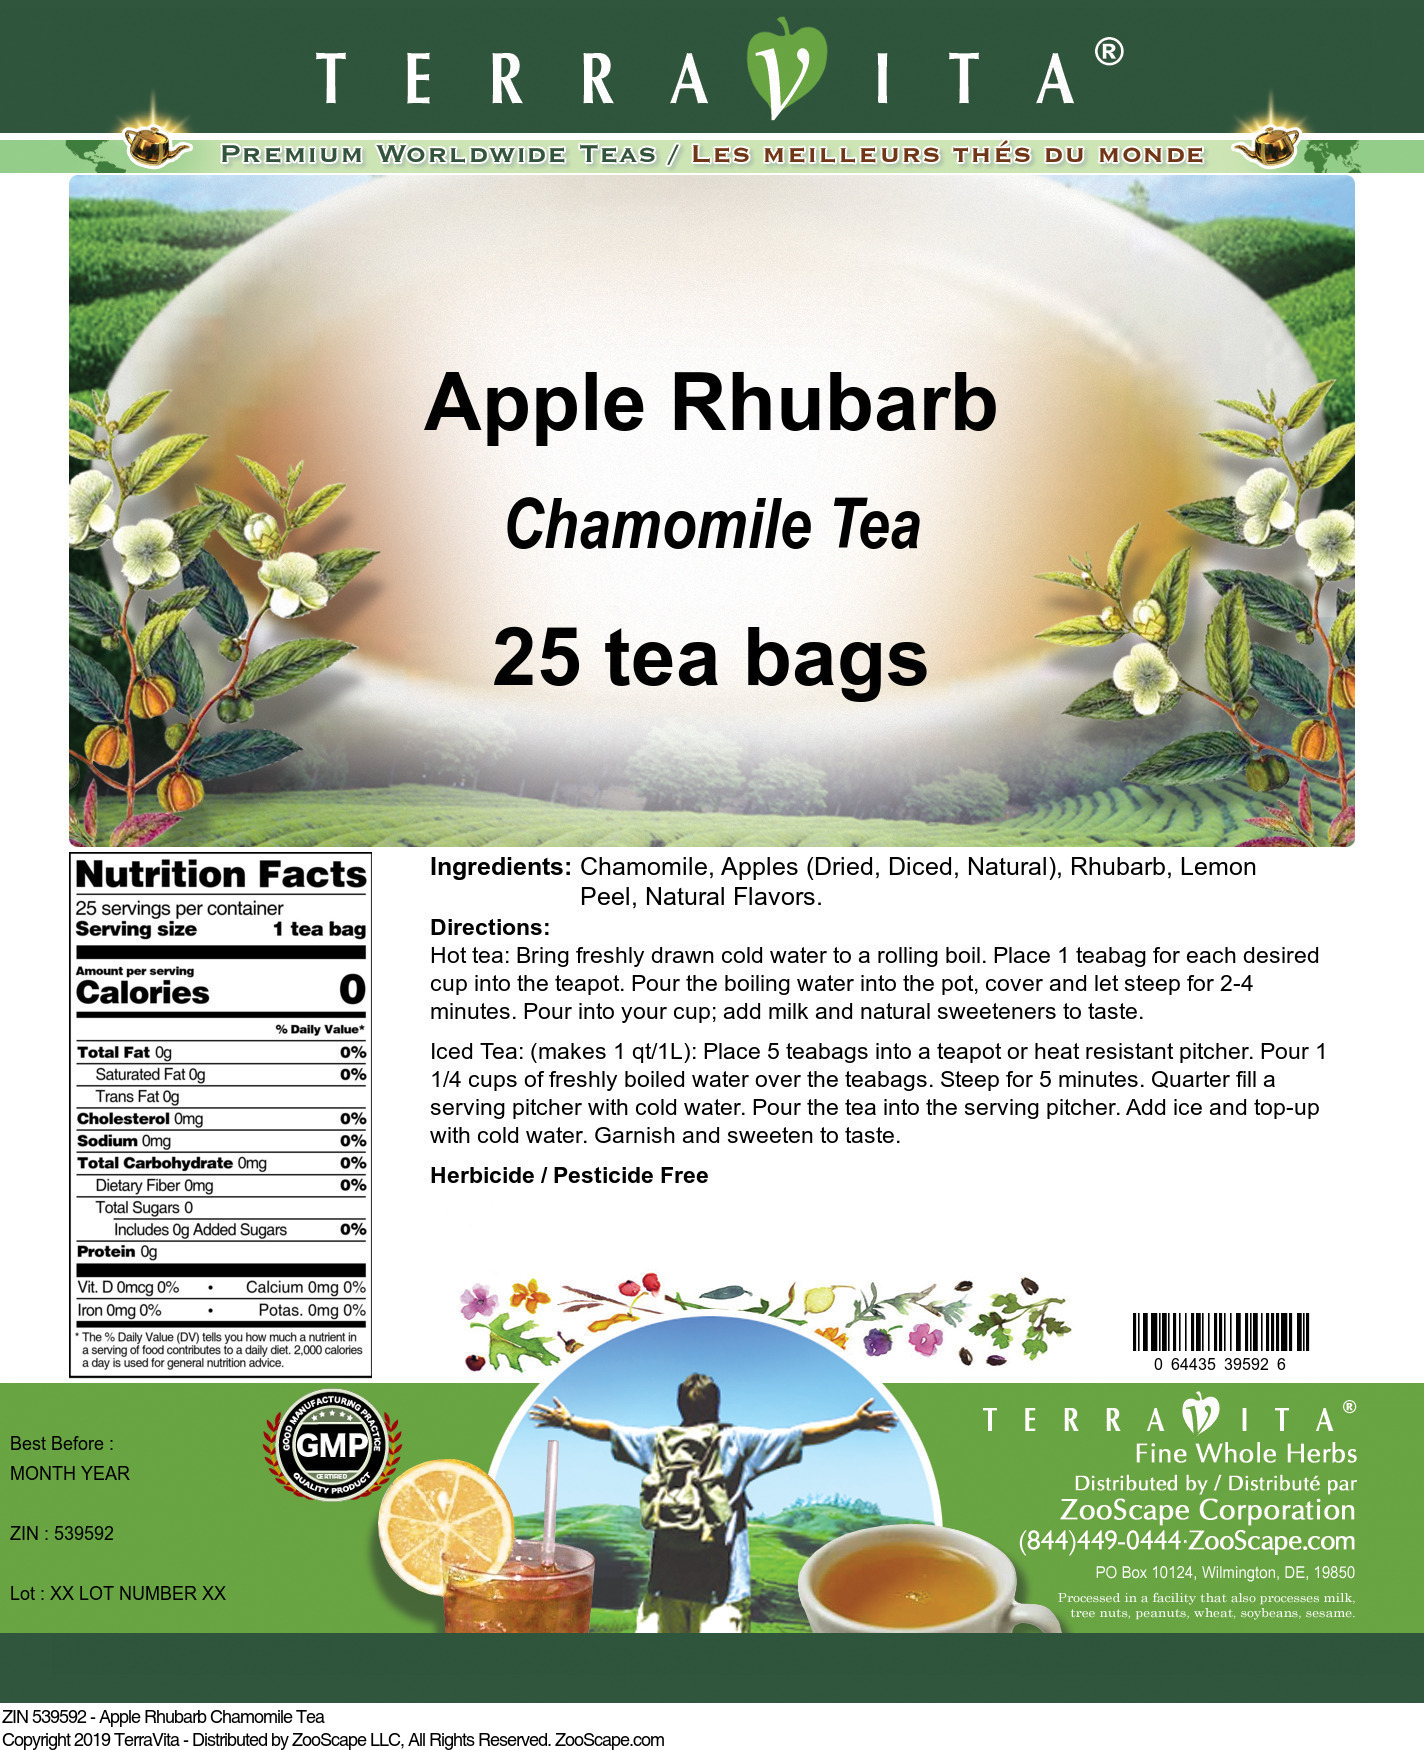 Apple Rhubarb Chamomile Tea - Label